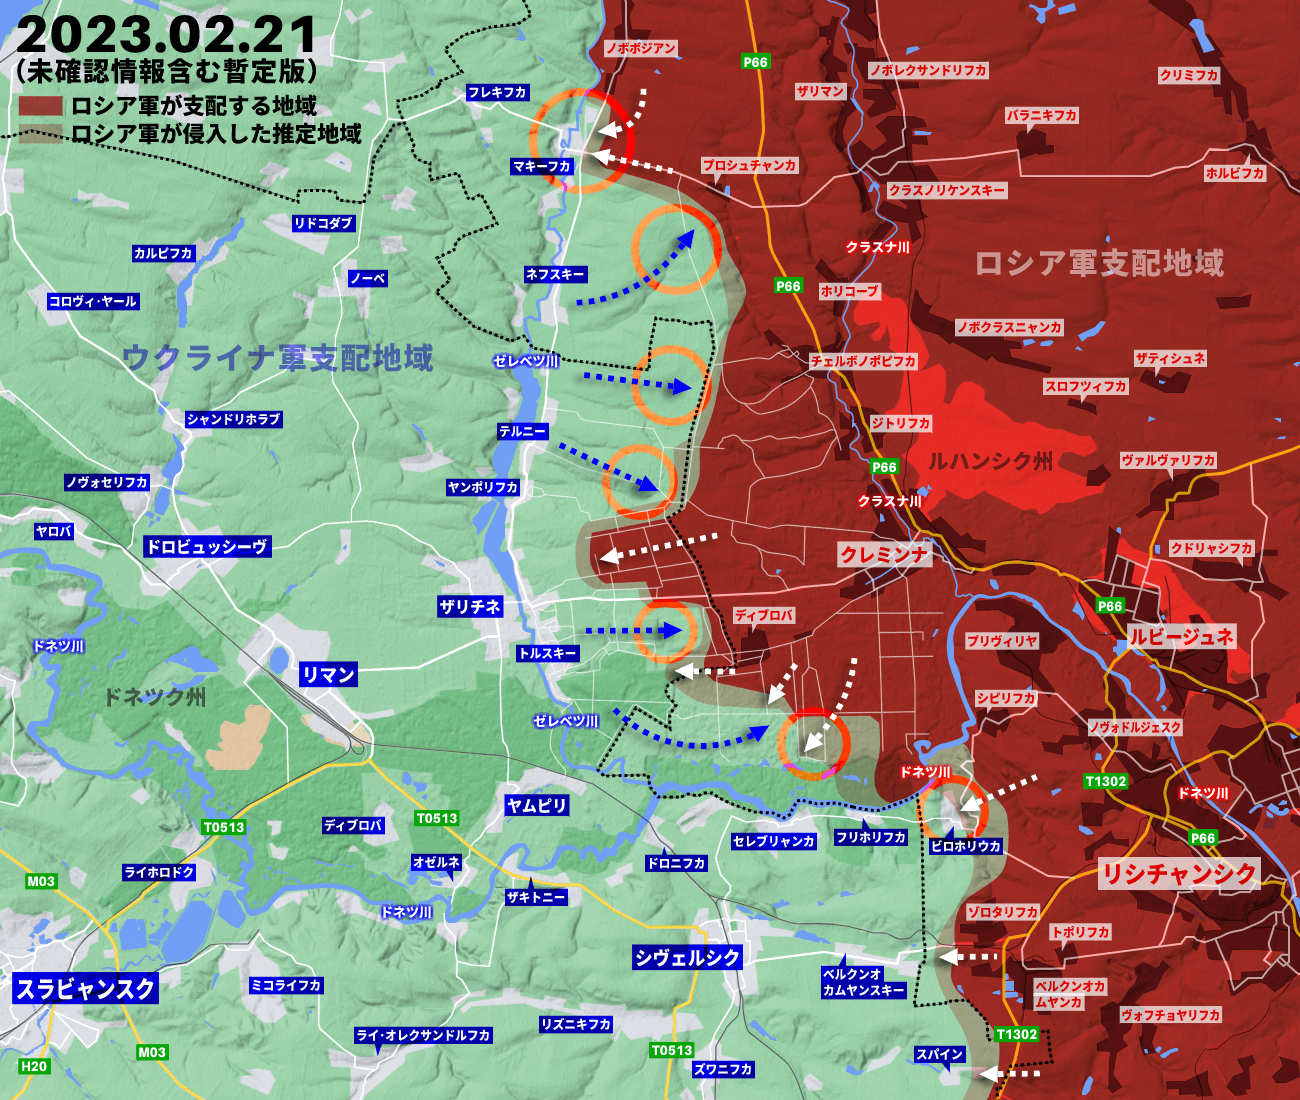 ウクライナ侵攻362日目の戦況、ロシア軍がバフムート包囲に向けて前進